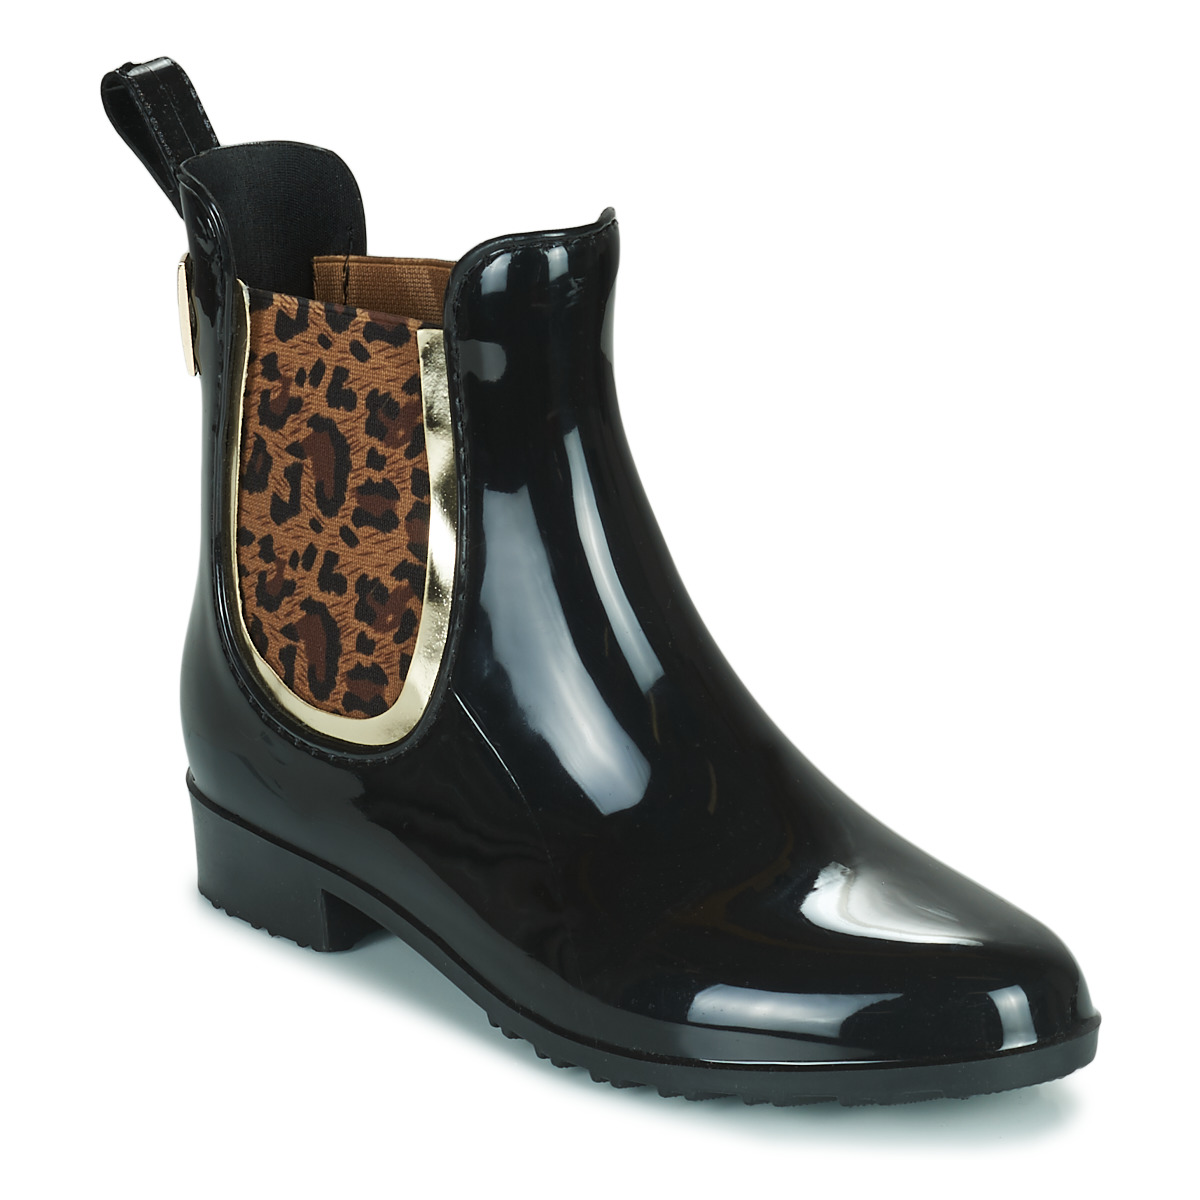 Παπούτσια Γυναίκα Μπότες βροχής Les Tropéziennes par M Belarbi RAINBOO Black / Leopard